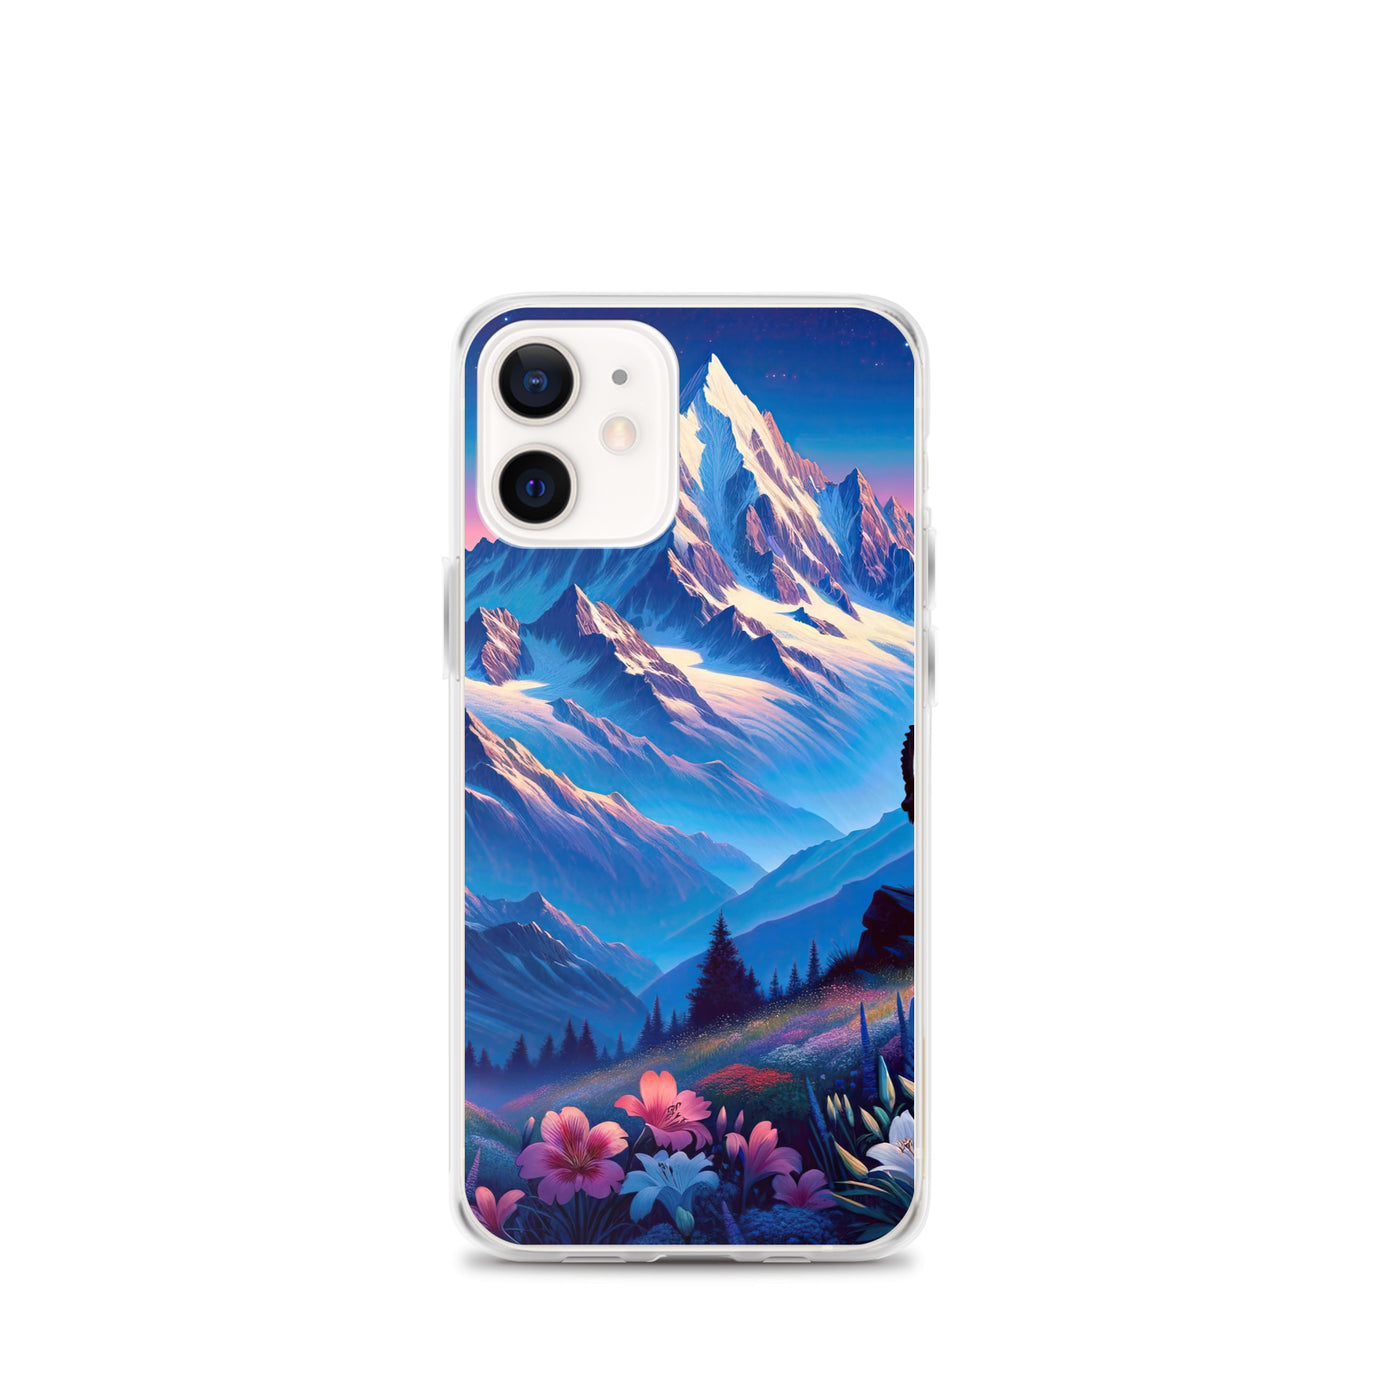 Steinbock bei Dämmerung in den Alpen, sonnengeküsste Schneegipfel - iPhone Schutzhülle (durchsichtig) berge xxx yyy zzz iPhone 12 mini